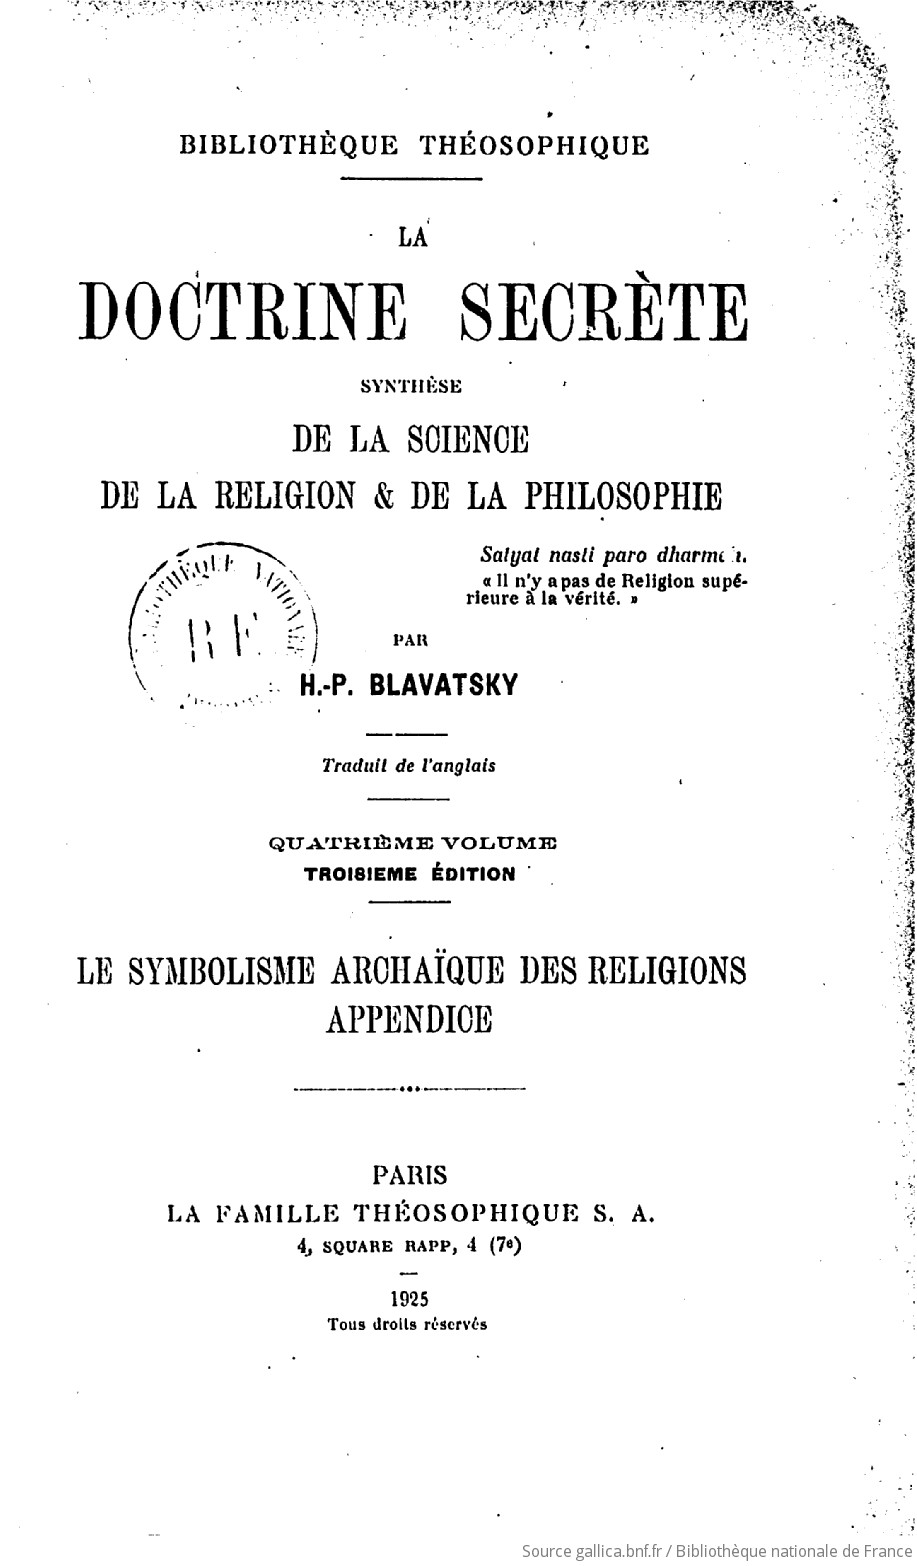 La doctrine secrète : synthèse de la science, de la religion & de la philosophie (3e édition) / par H.-P. Blavatsky